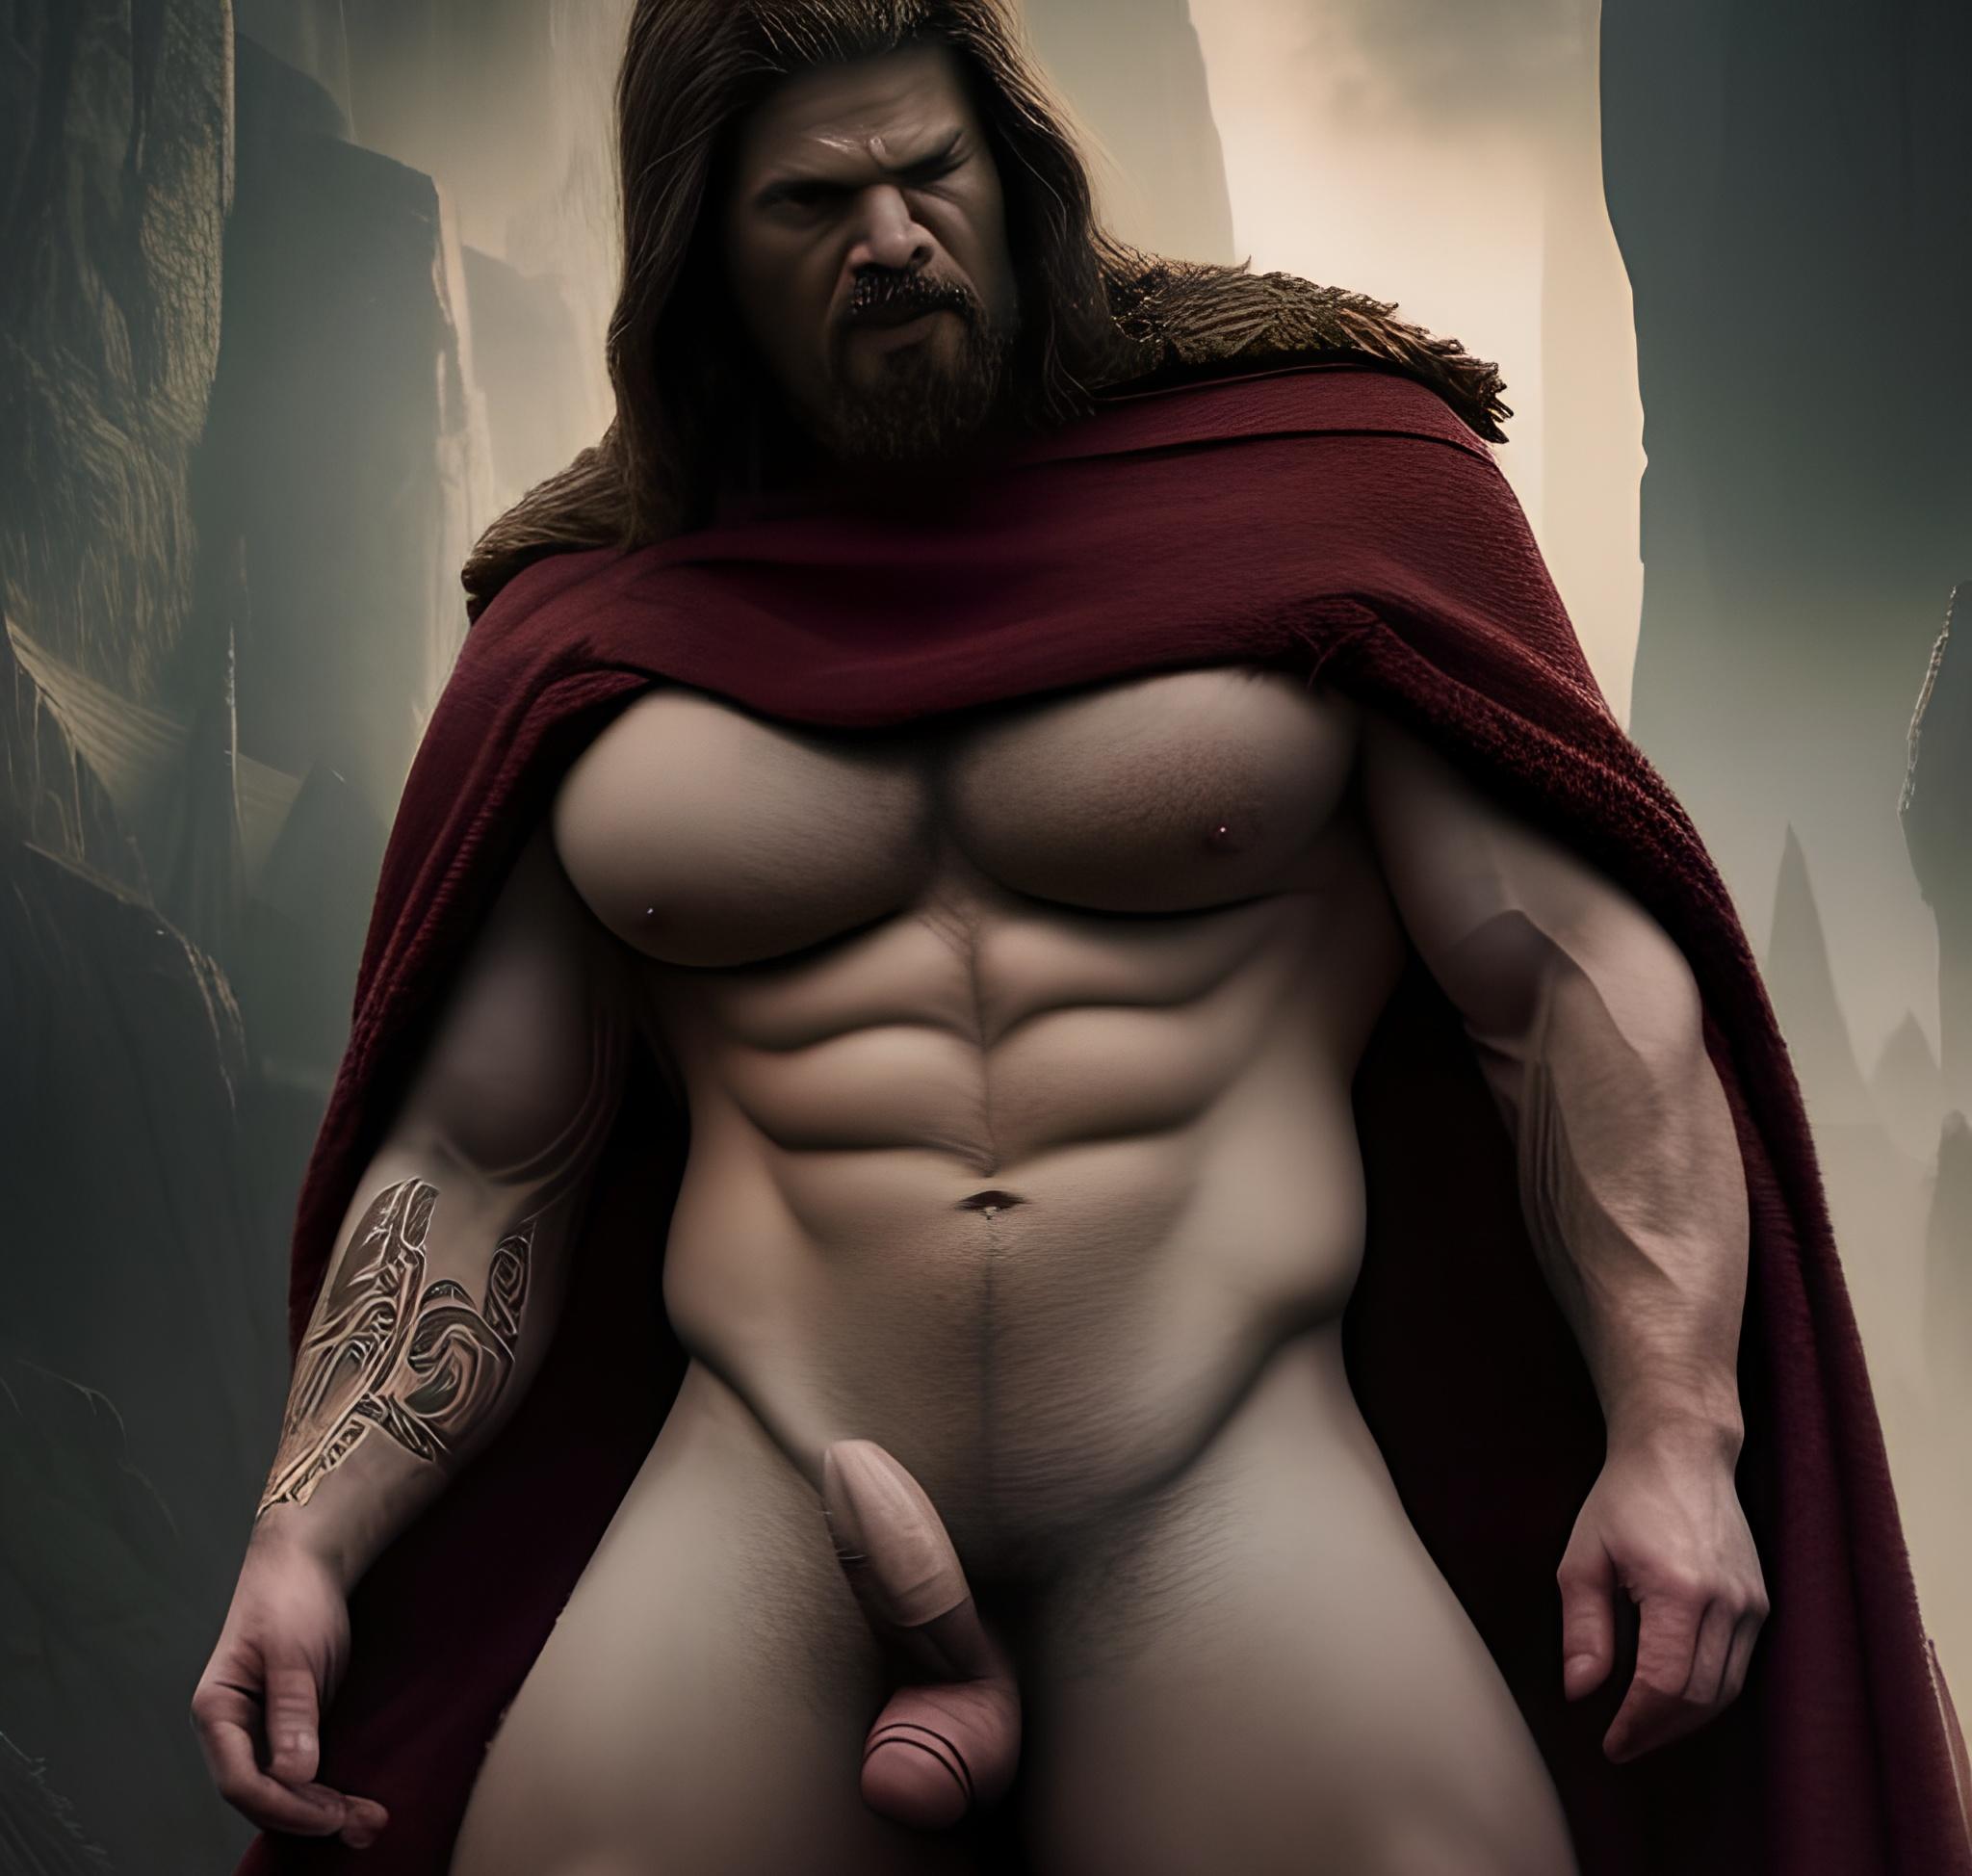 La grosse bite épaisse dressée dun bodybuilder viking de 30 ans dans les montagnes Dark